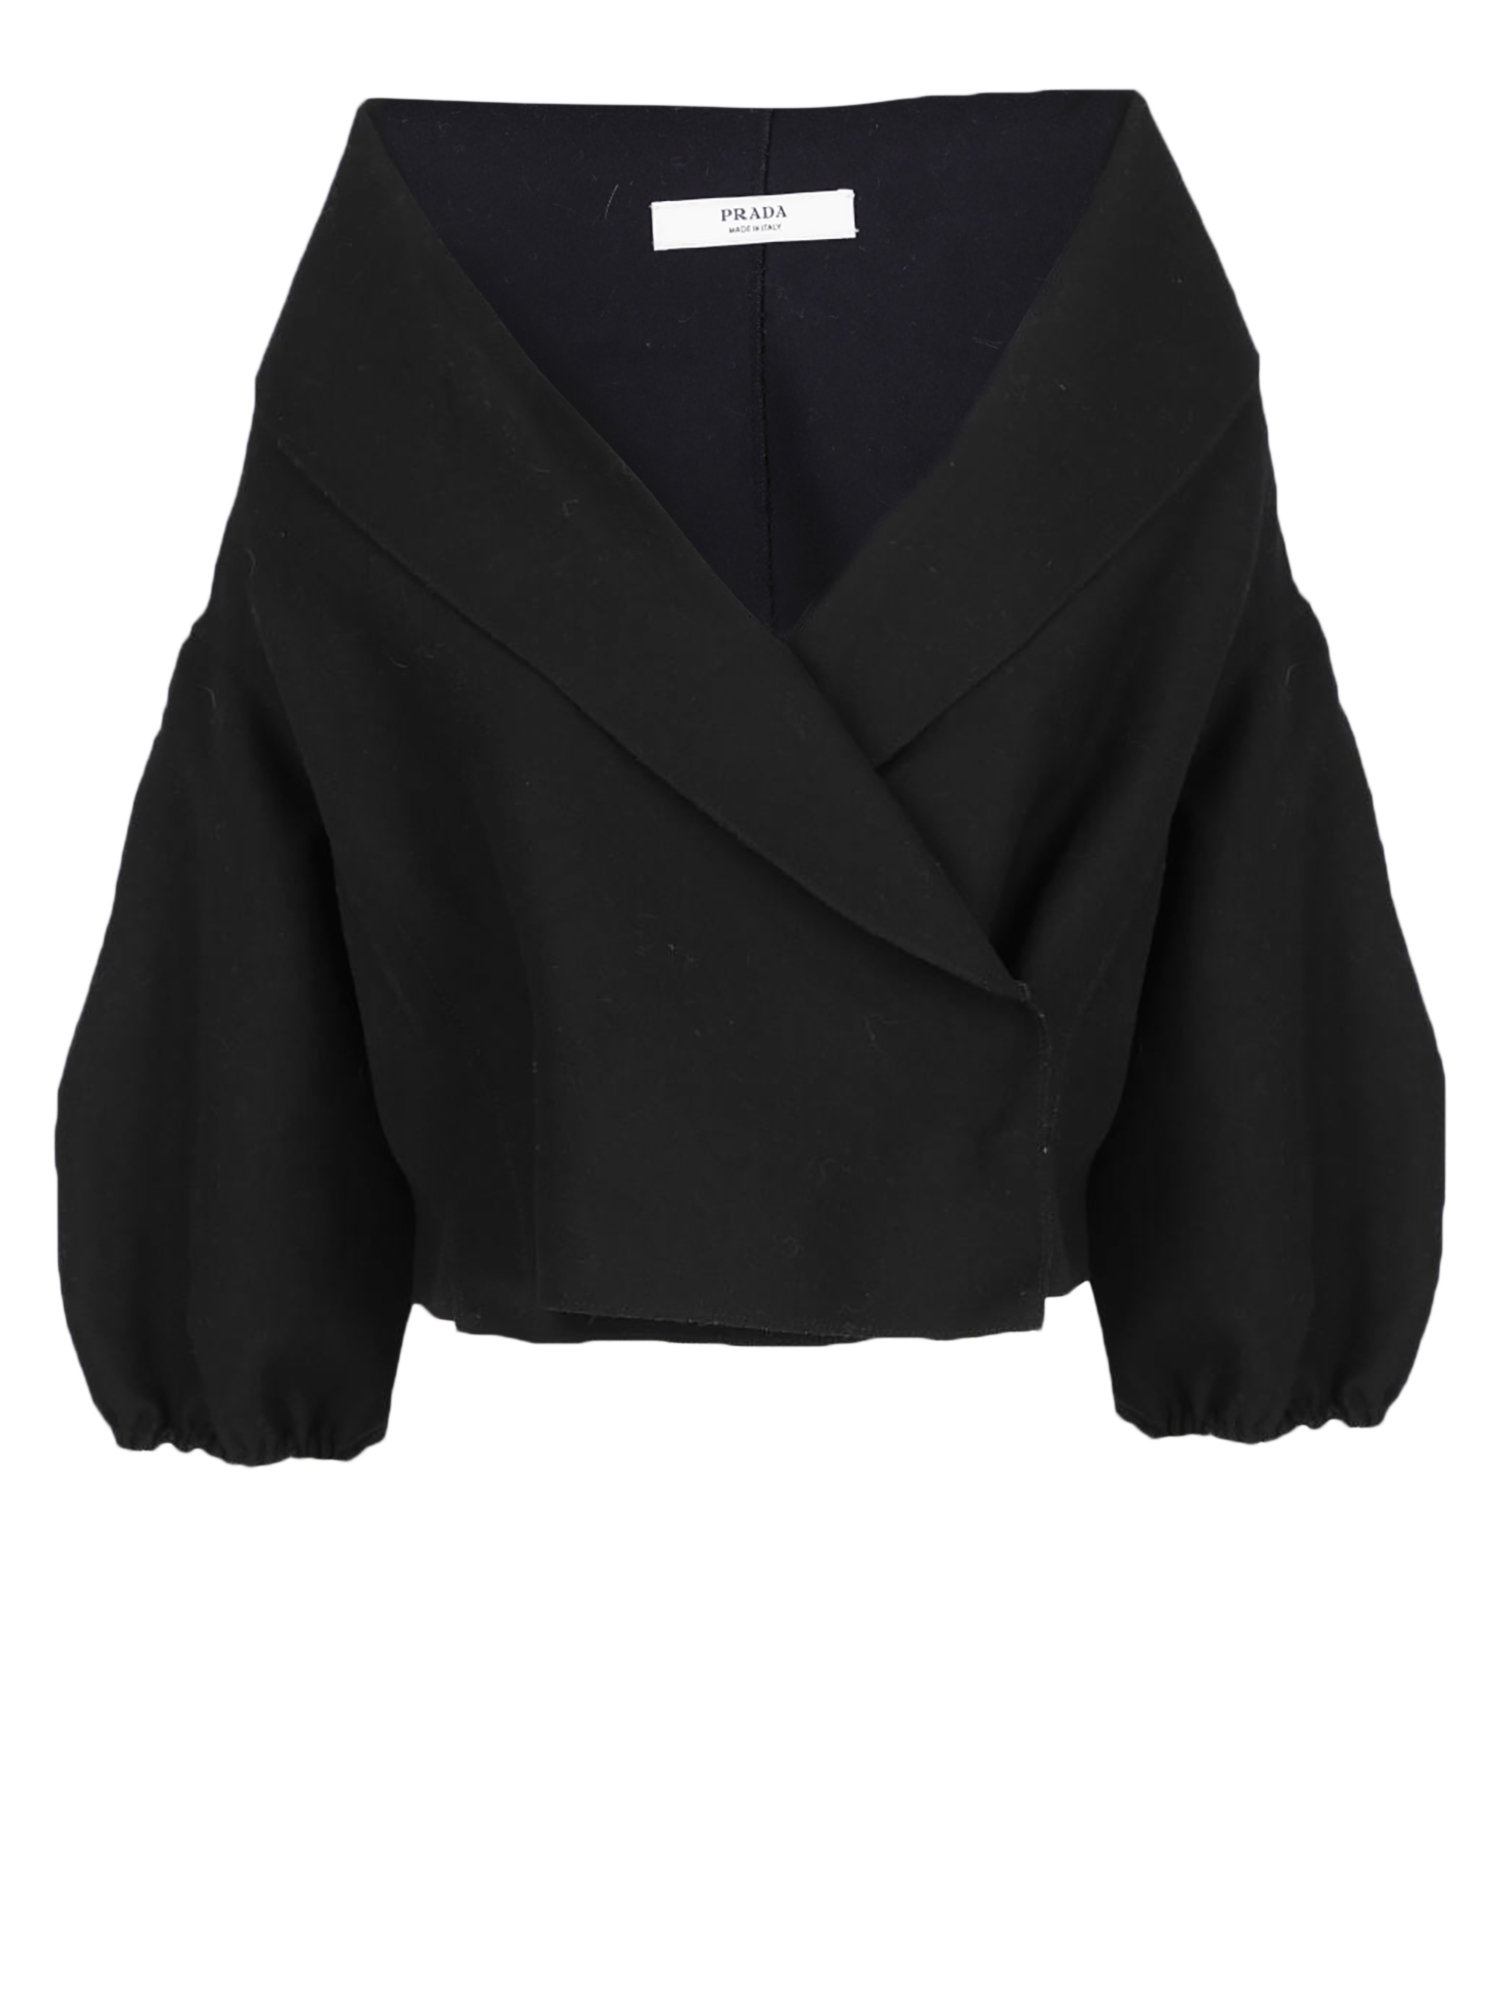 Vestes Pour Femme - Prada - En Wool Black - Taille:  -